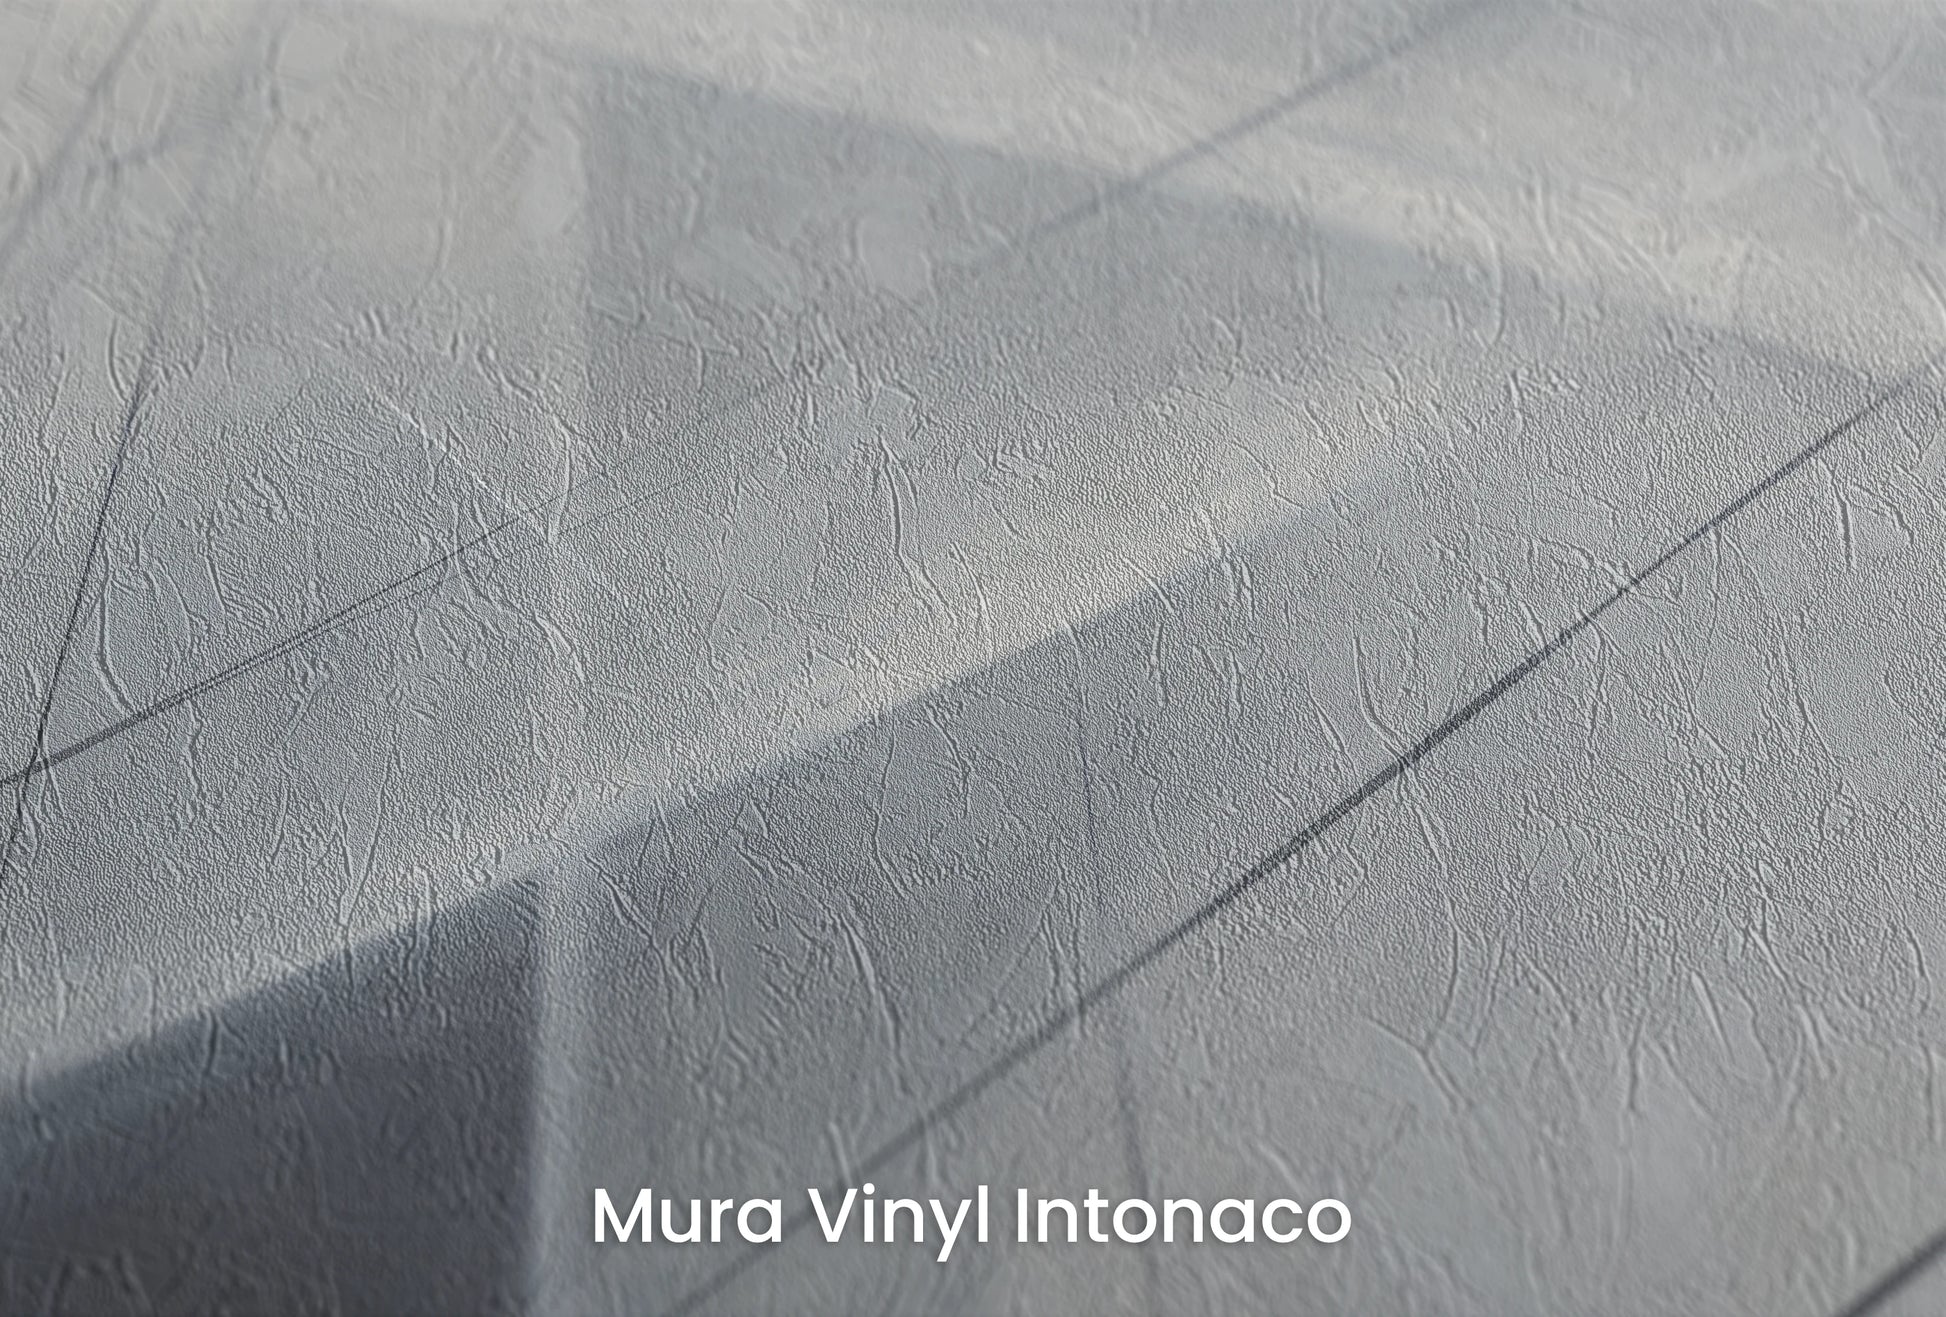 Zbliżenie na artystyczną fototapetę o nazwie Monochrome Network na podłożu Mura Vinyl Intonaco - struktura tartego tynku.